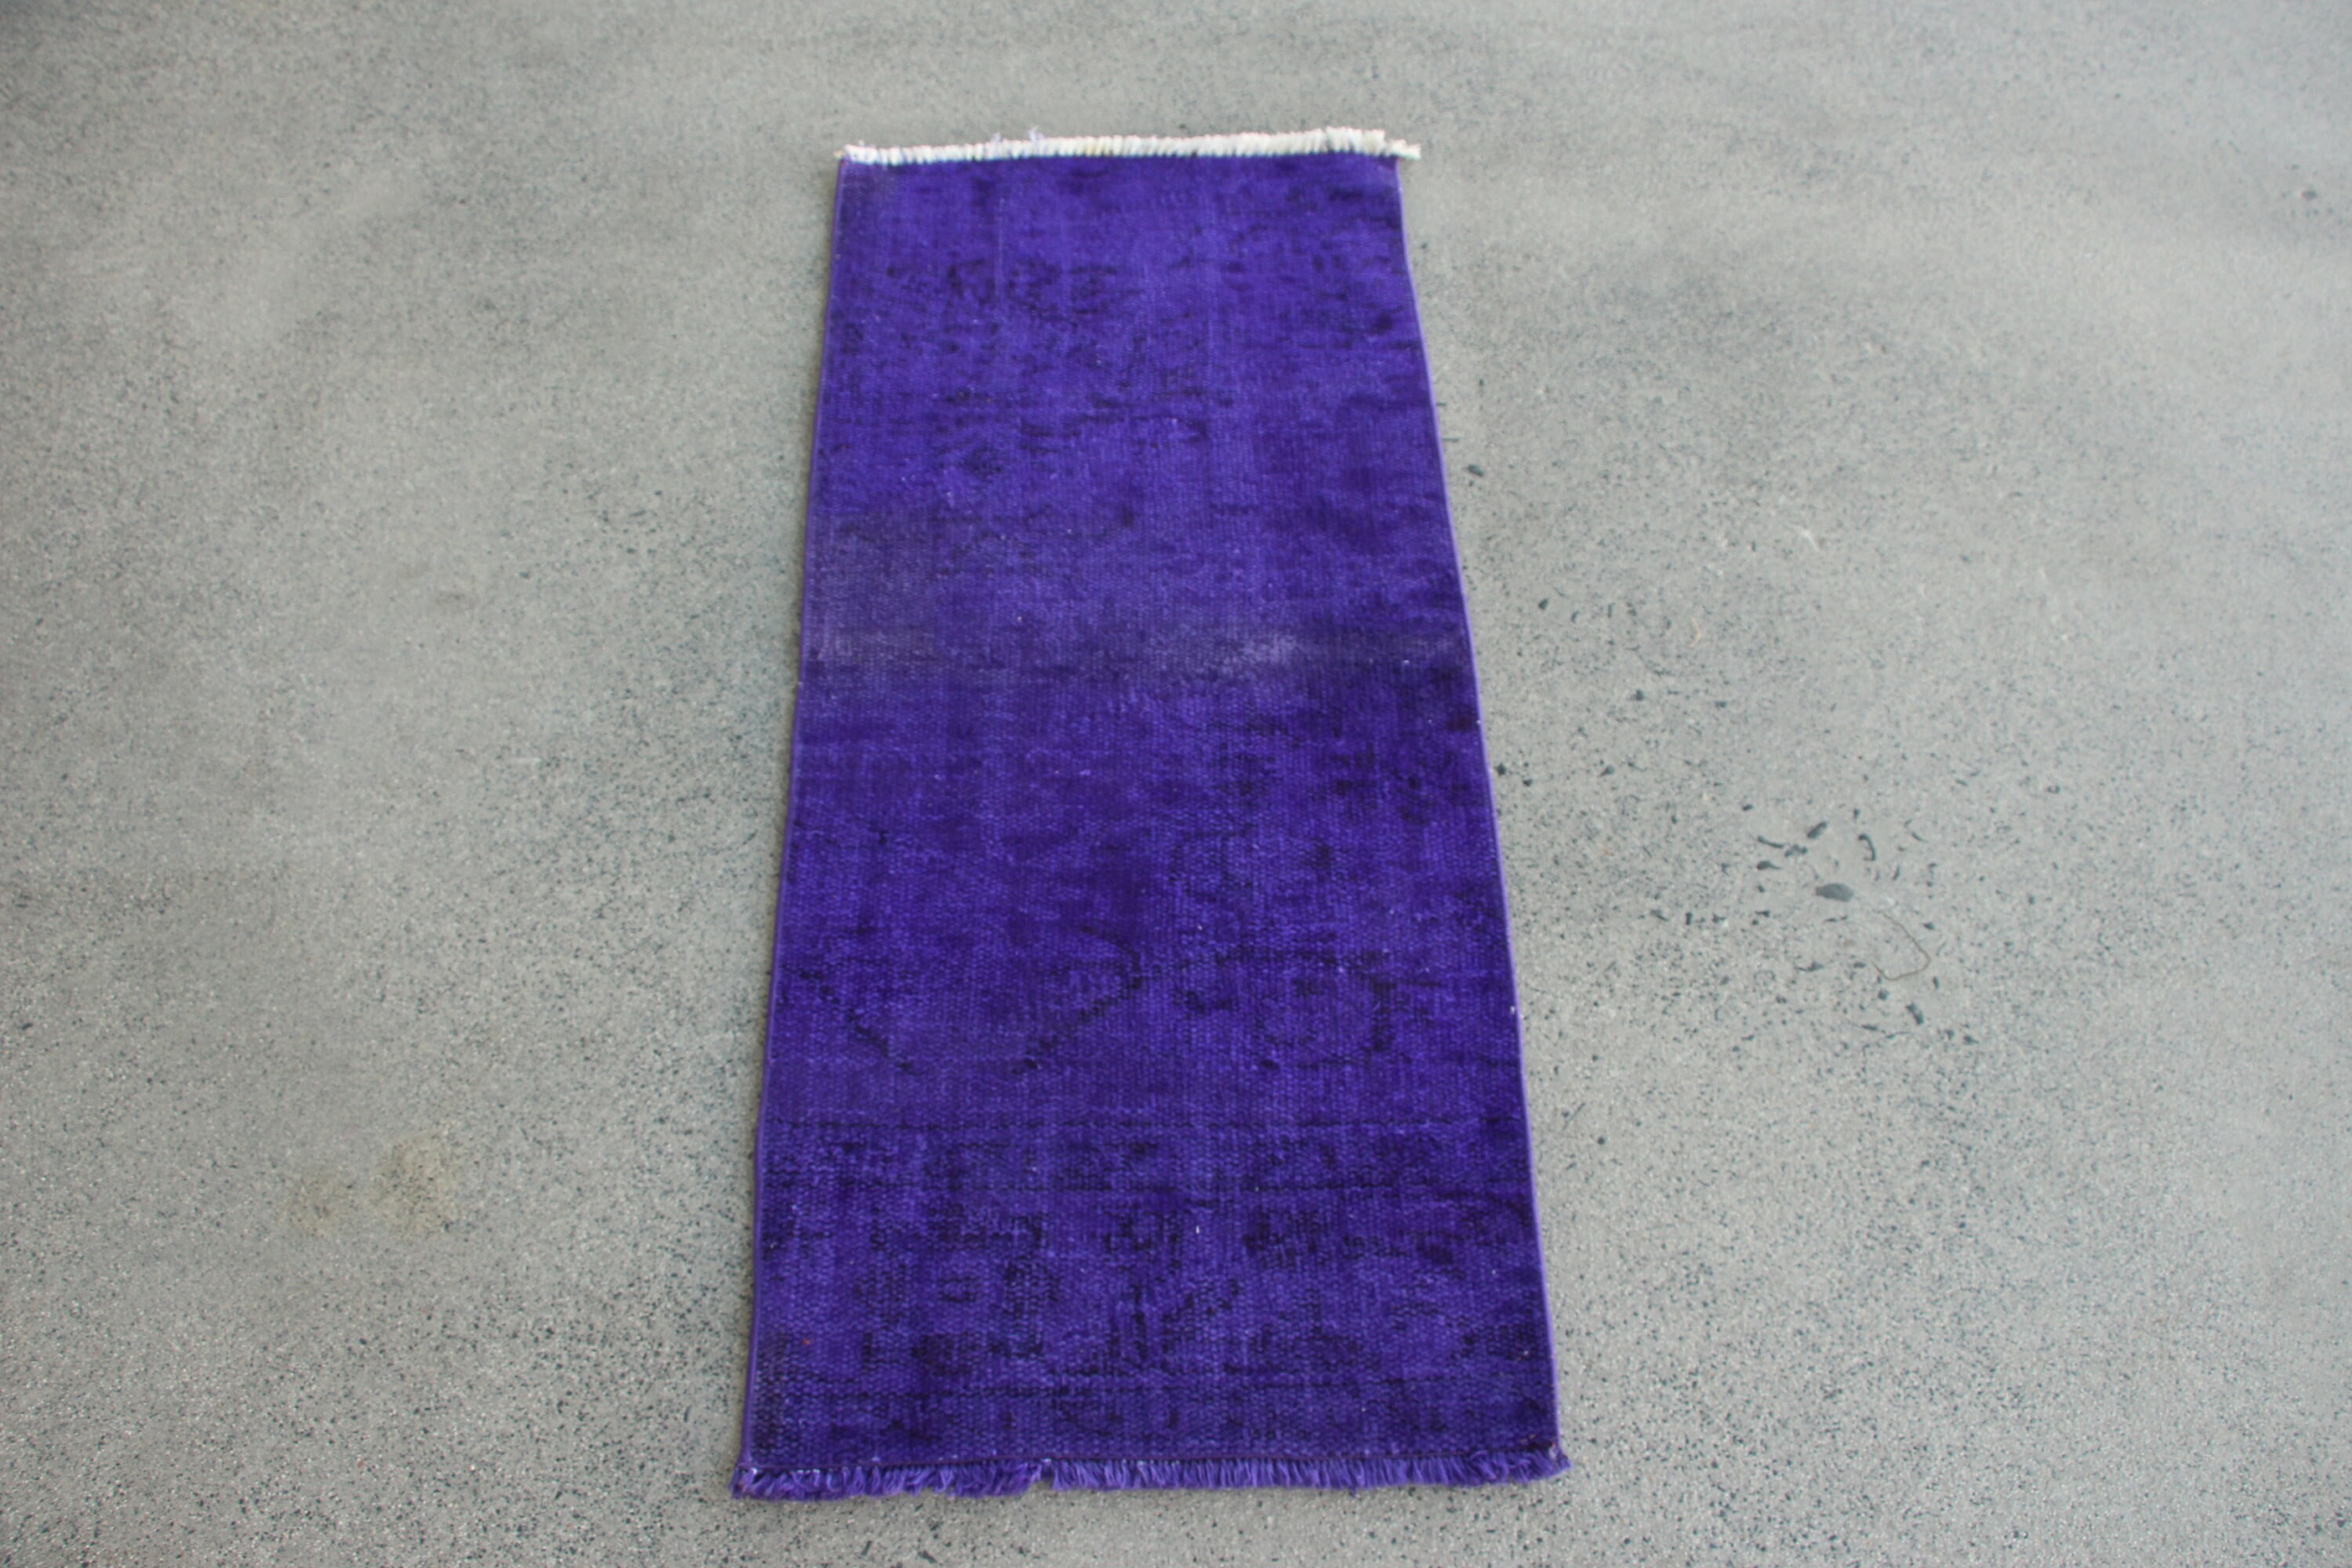 Custom Rug, Vintage Rugs, Bath Rugs, Nursery Rugs, Purple  1.6x3.7 ft Small Rug, Home Decor Rugs, Turkish Rug